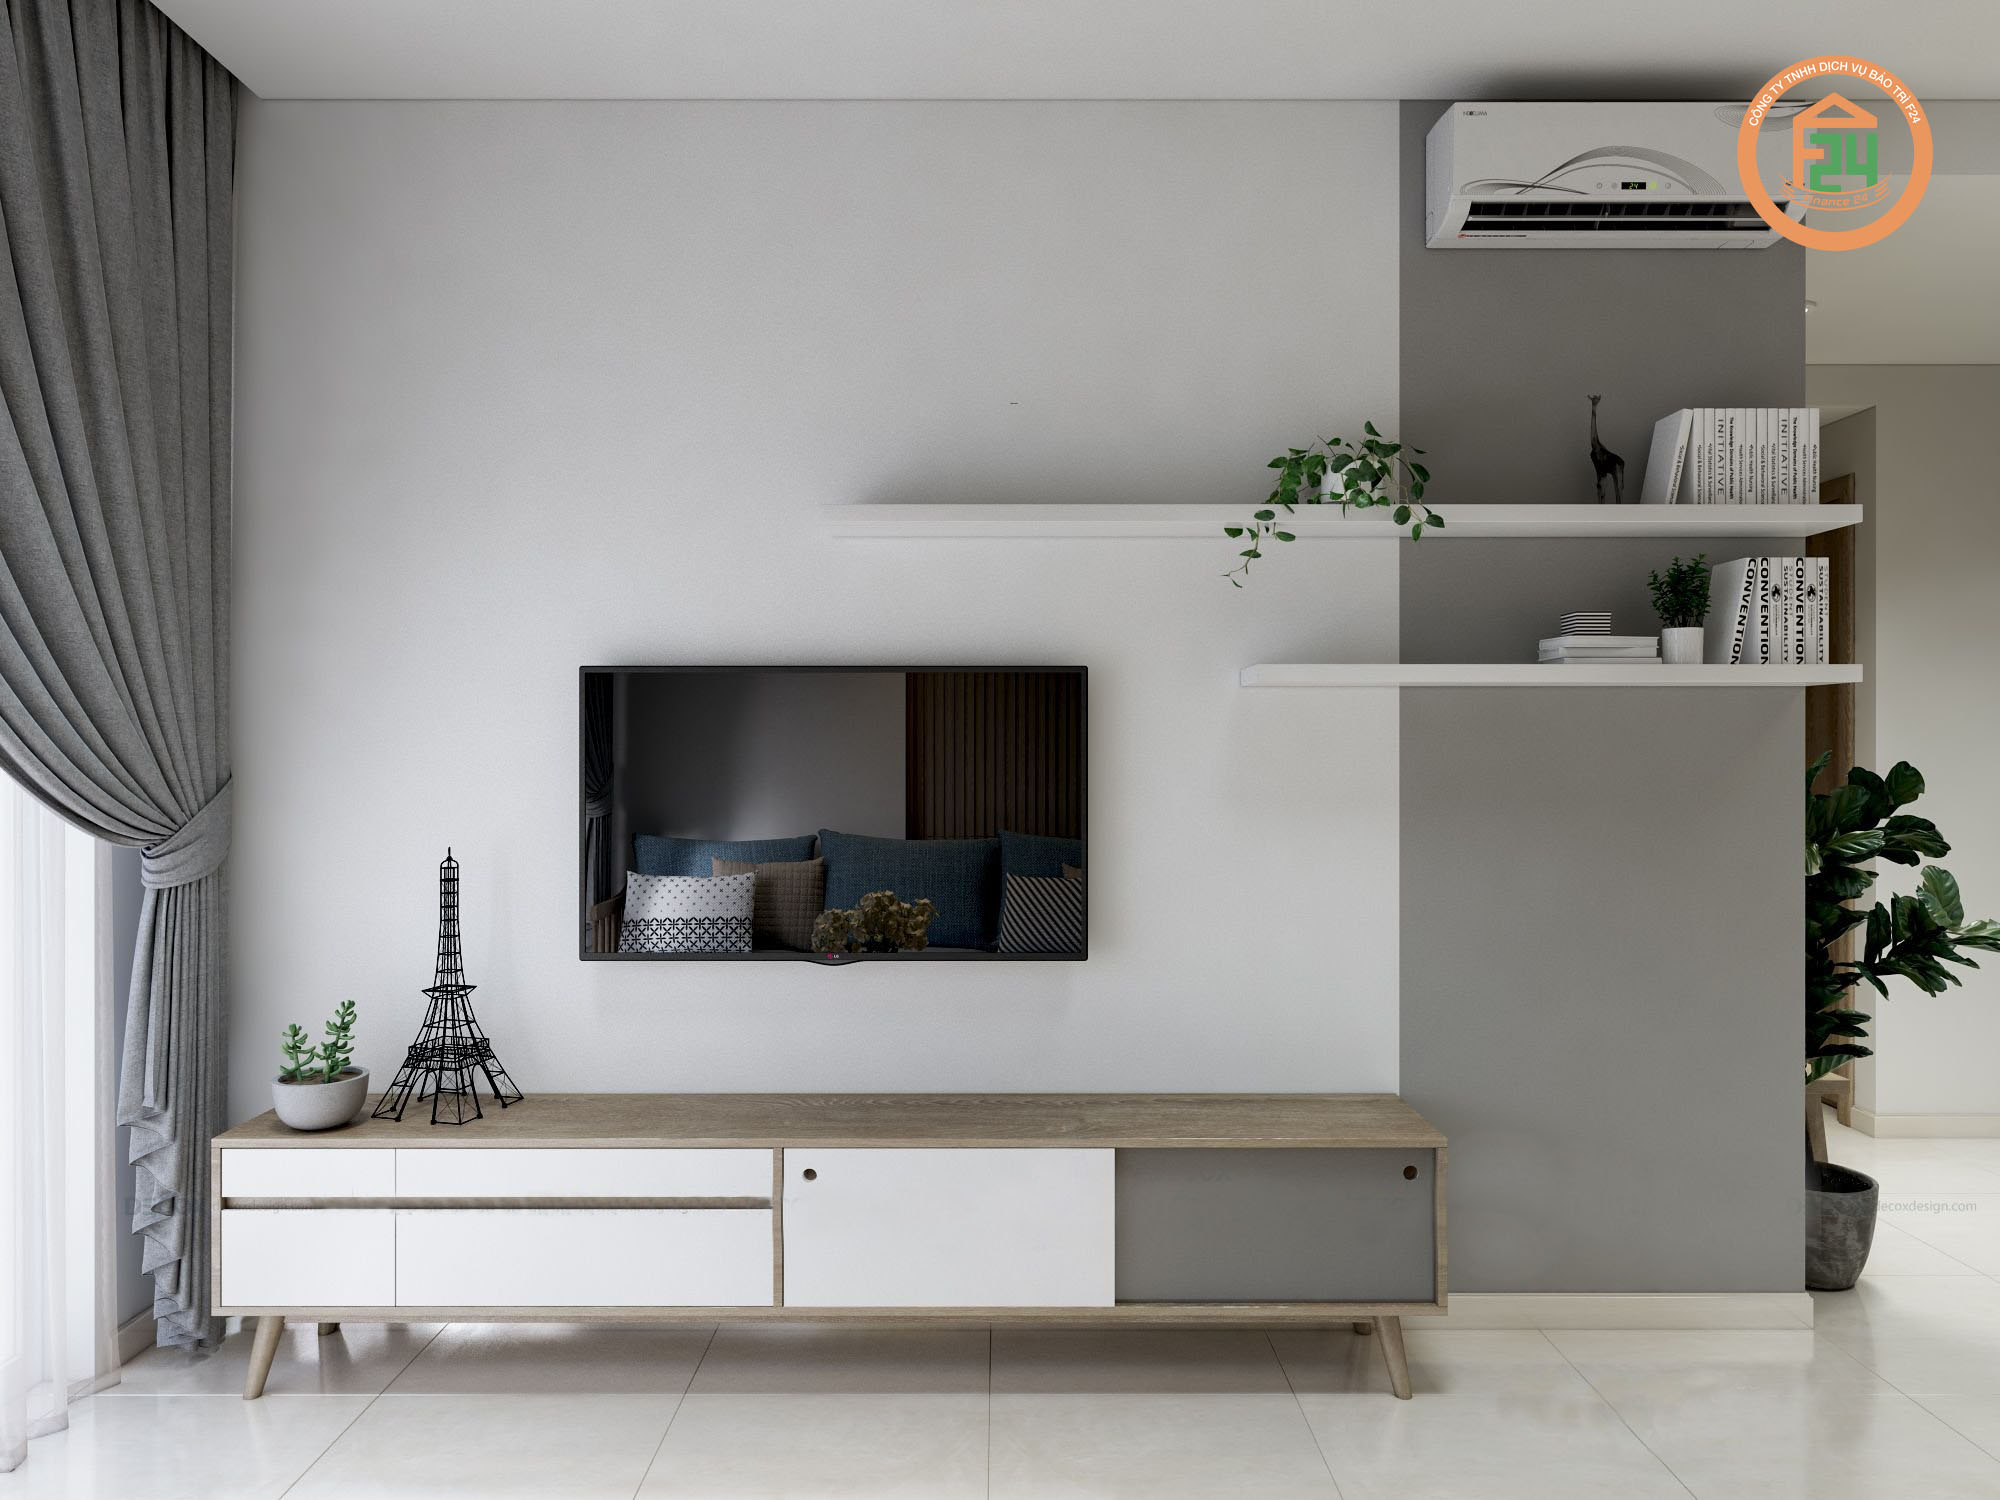 233 - Ý tưởng cho thiết kế nội thất phòng khách chung cư nhỏ - tiện ích (P2)